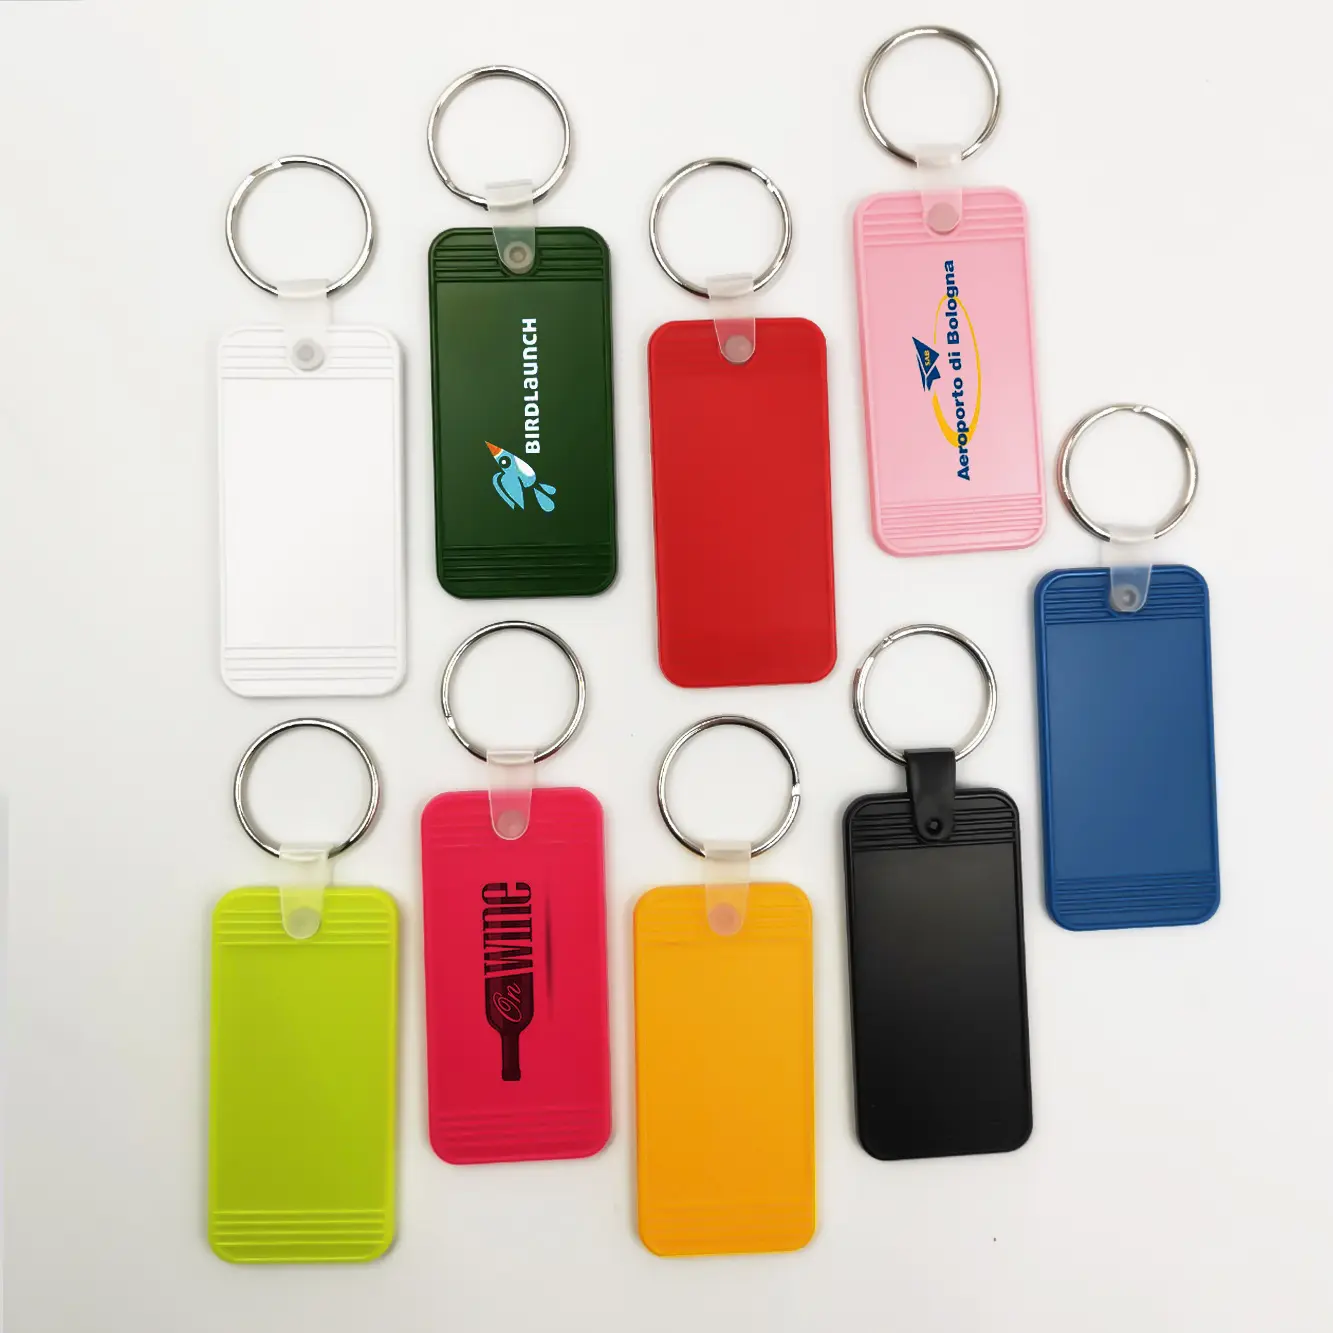 سلسلة مفاتيح بعلامة مفتاح فوب للفنادق فارغة بلاستيكية ترويجية مخصصة للهدايا